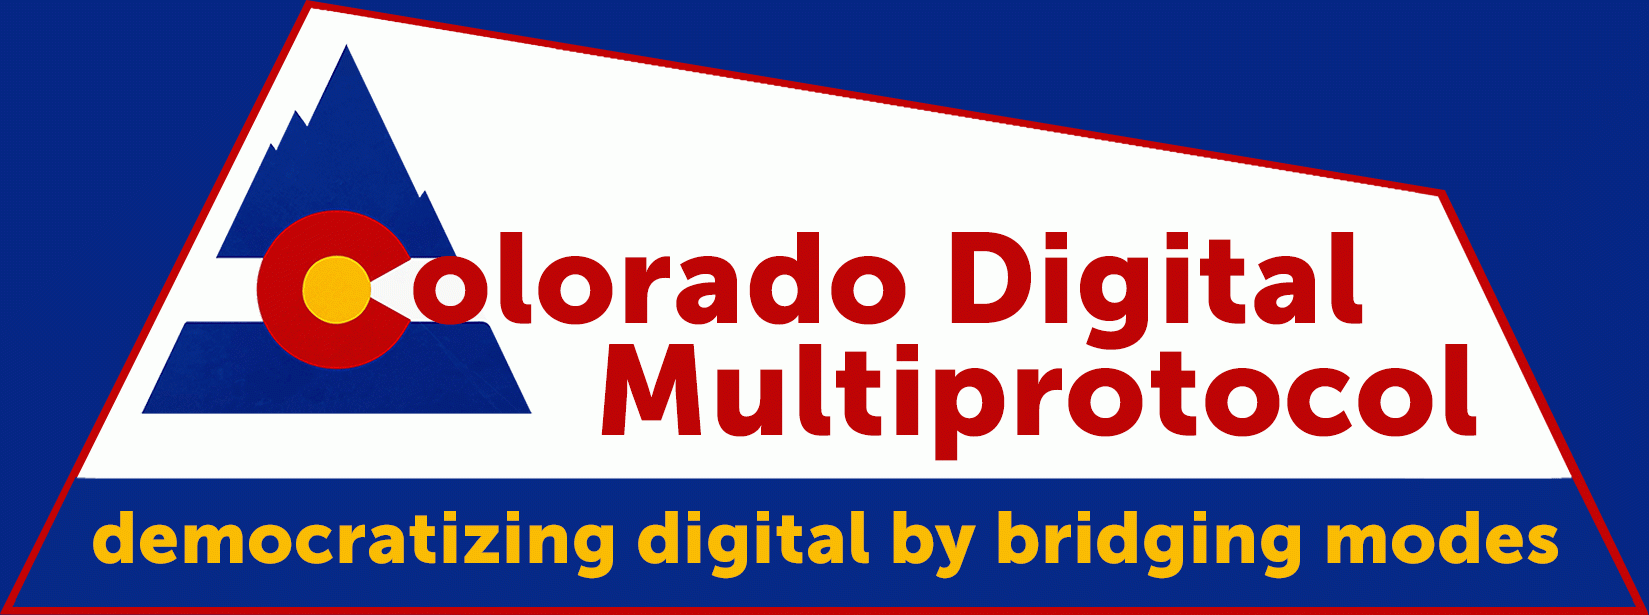 Colorado Digital